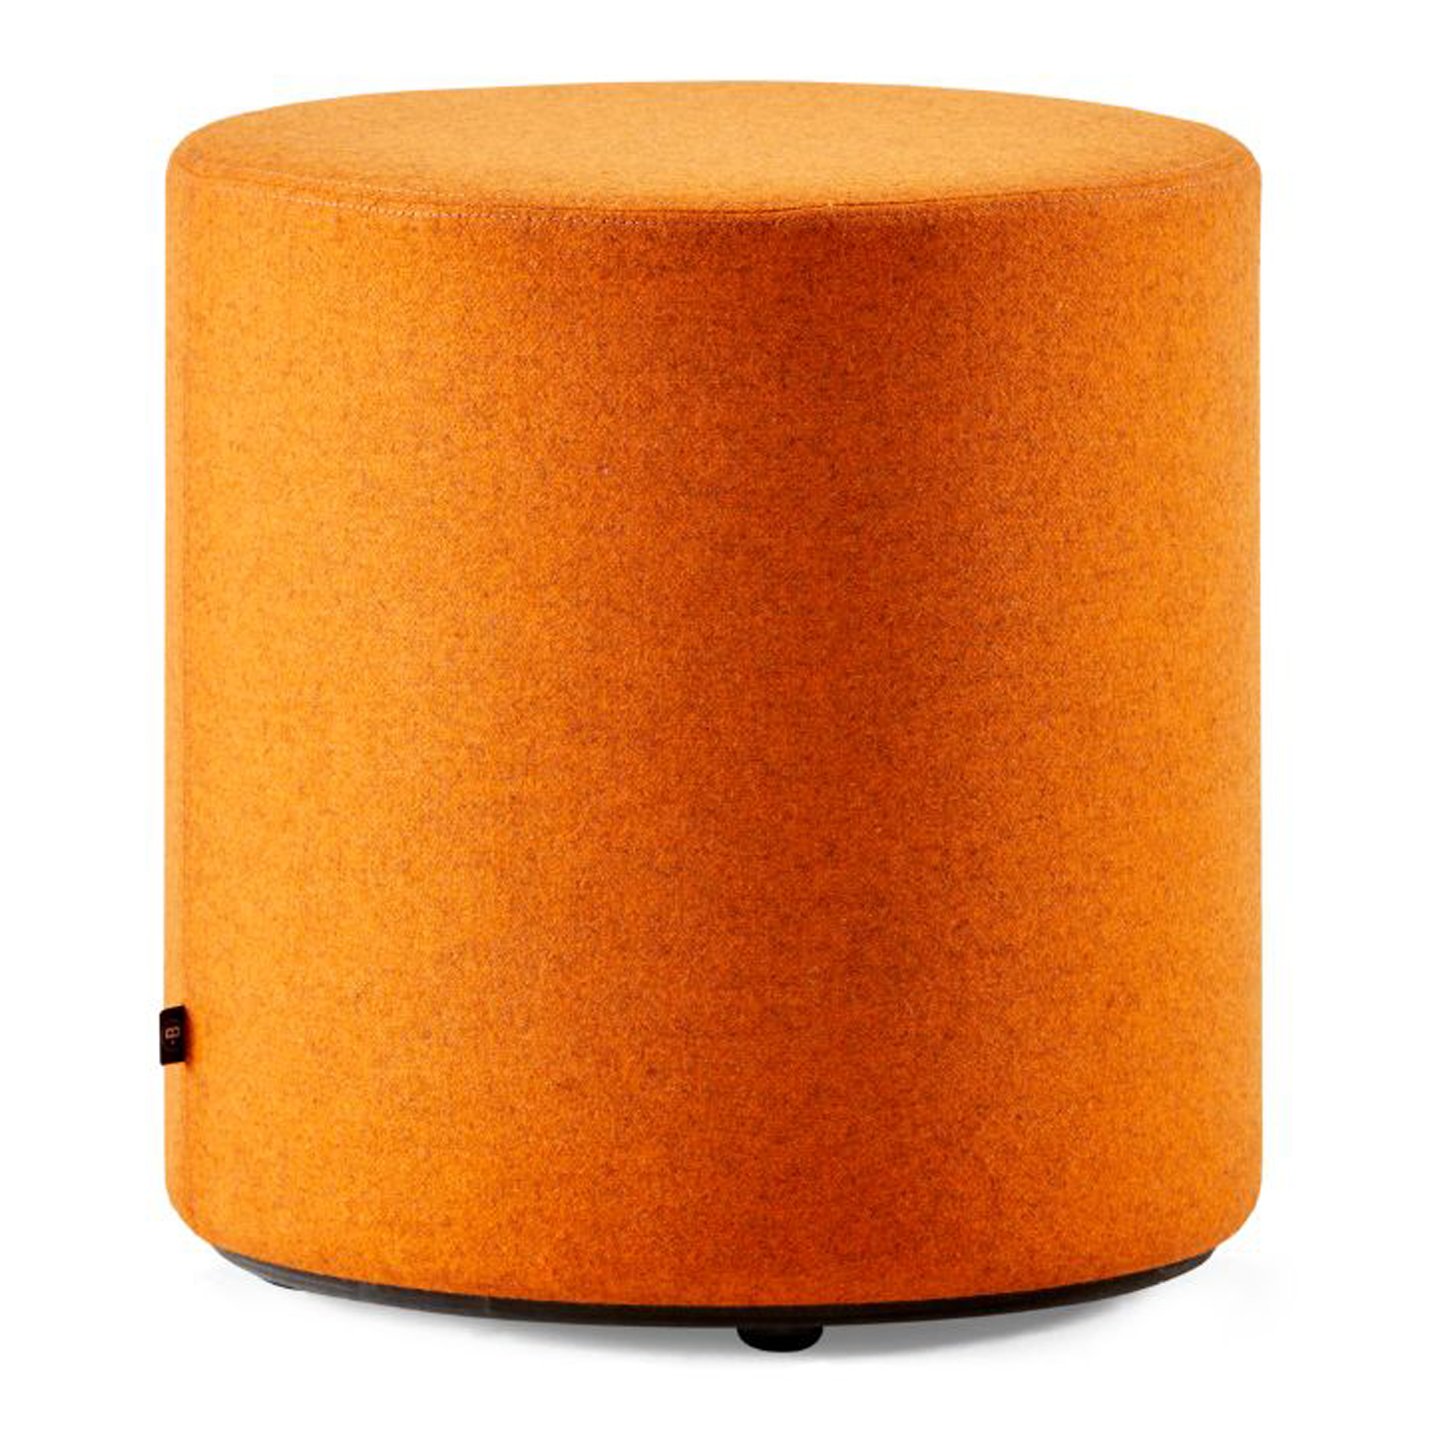 Haworth Buzzispot pouf in orange color